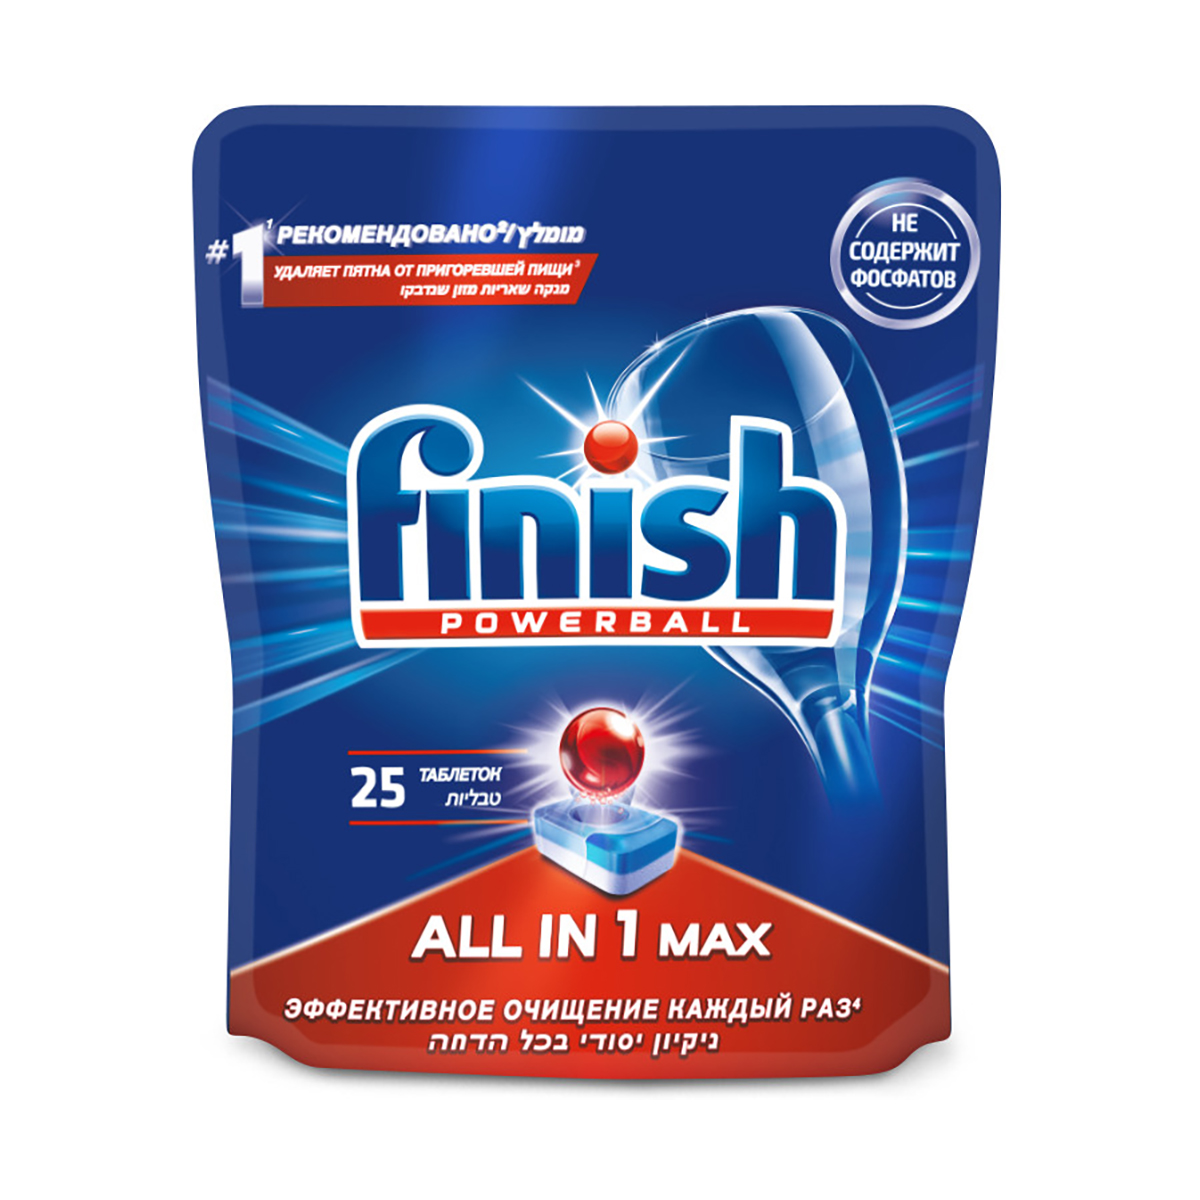 Таблетки для посудомоечной машины "finish all in 1 max" 25 шт. (1/6)